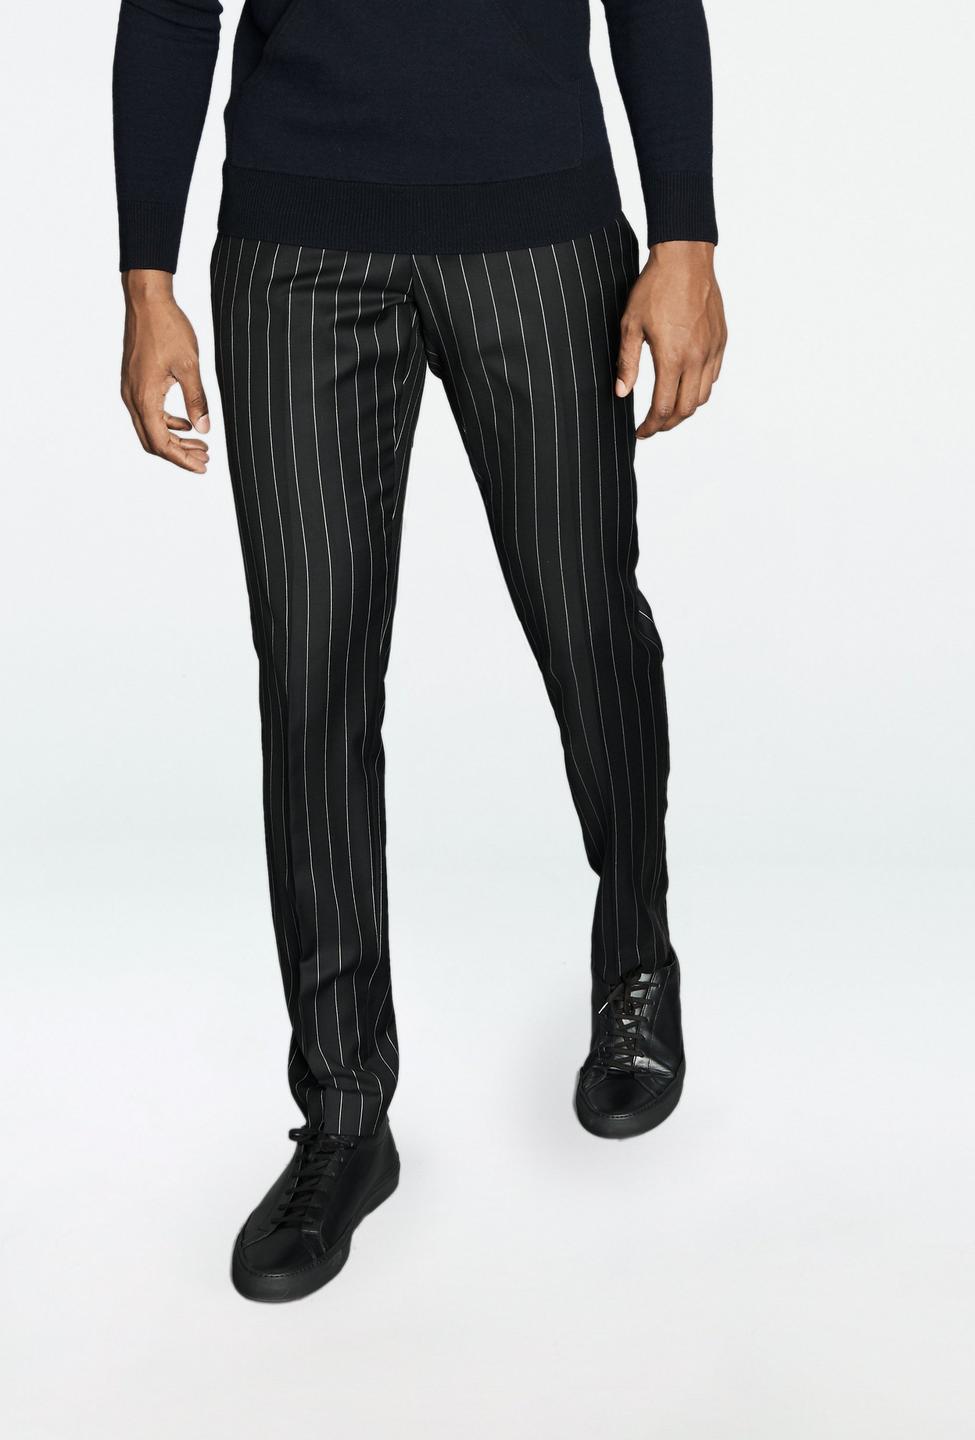 RJ Chalk Stripe Black Pants